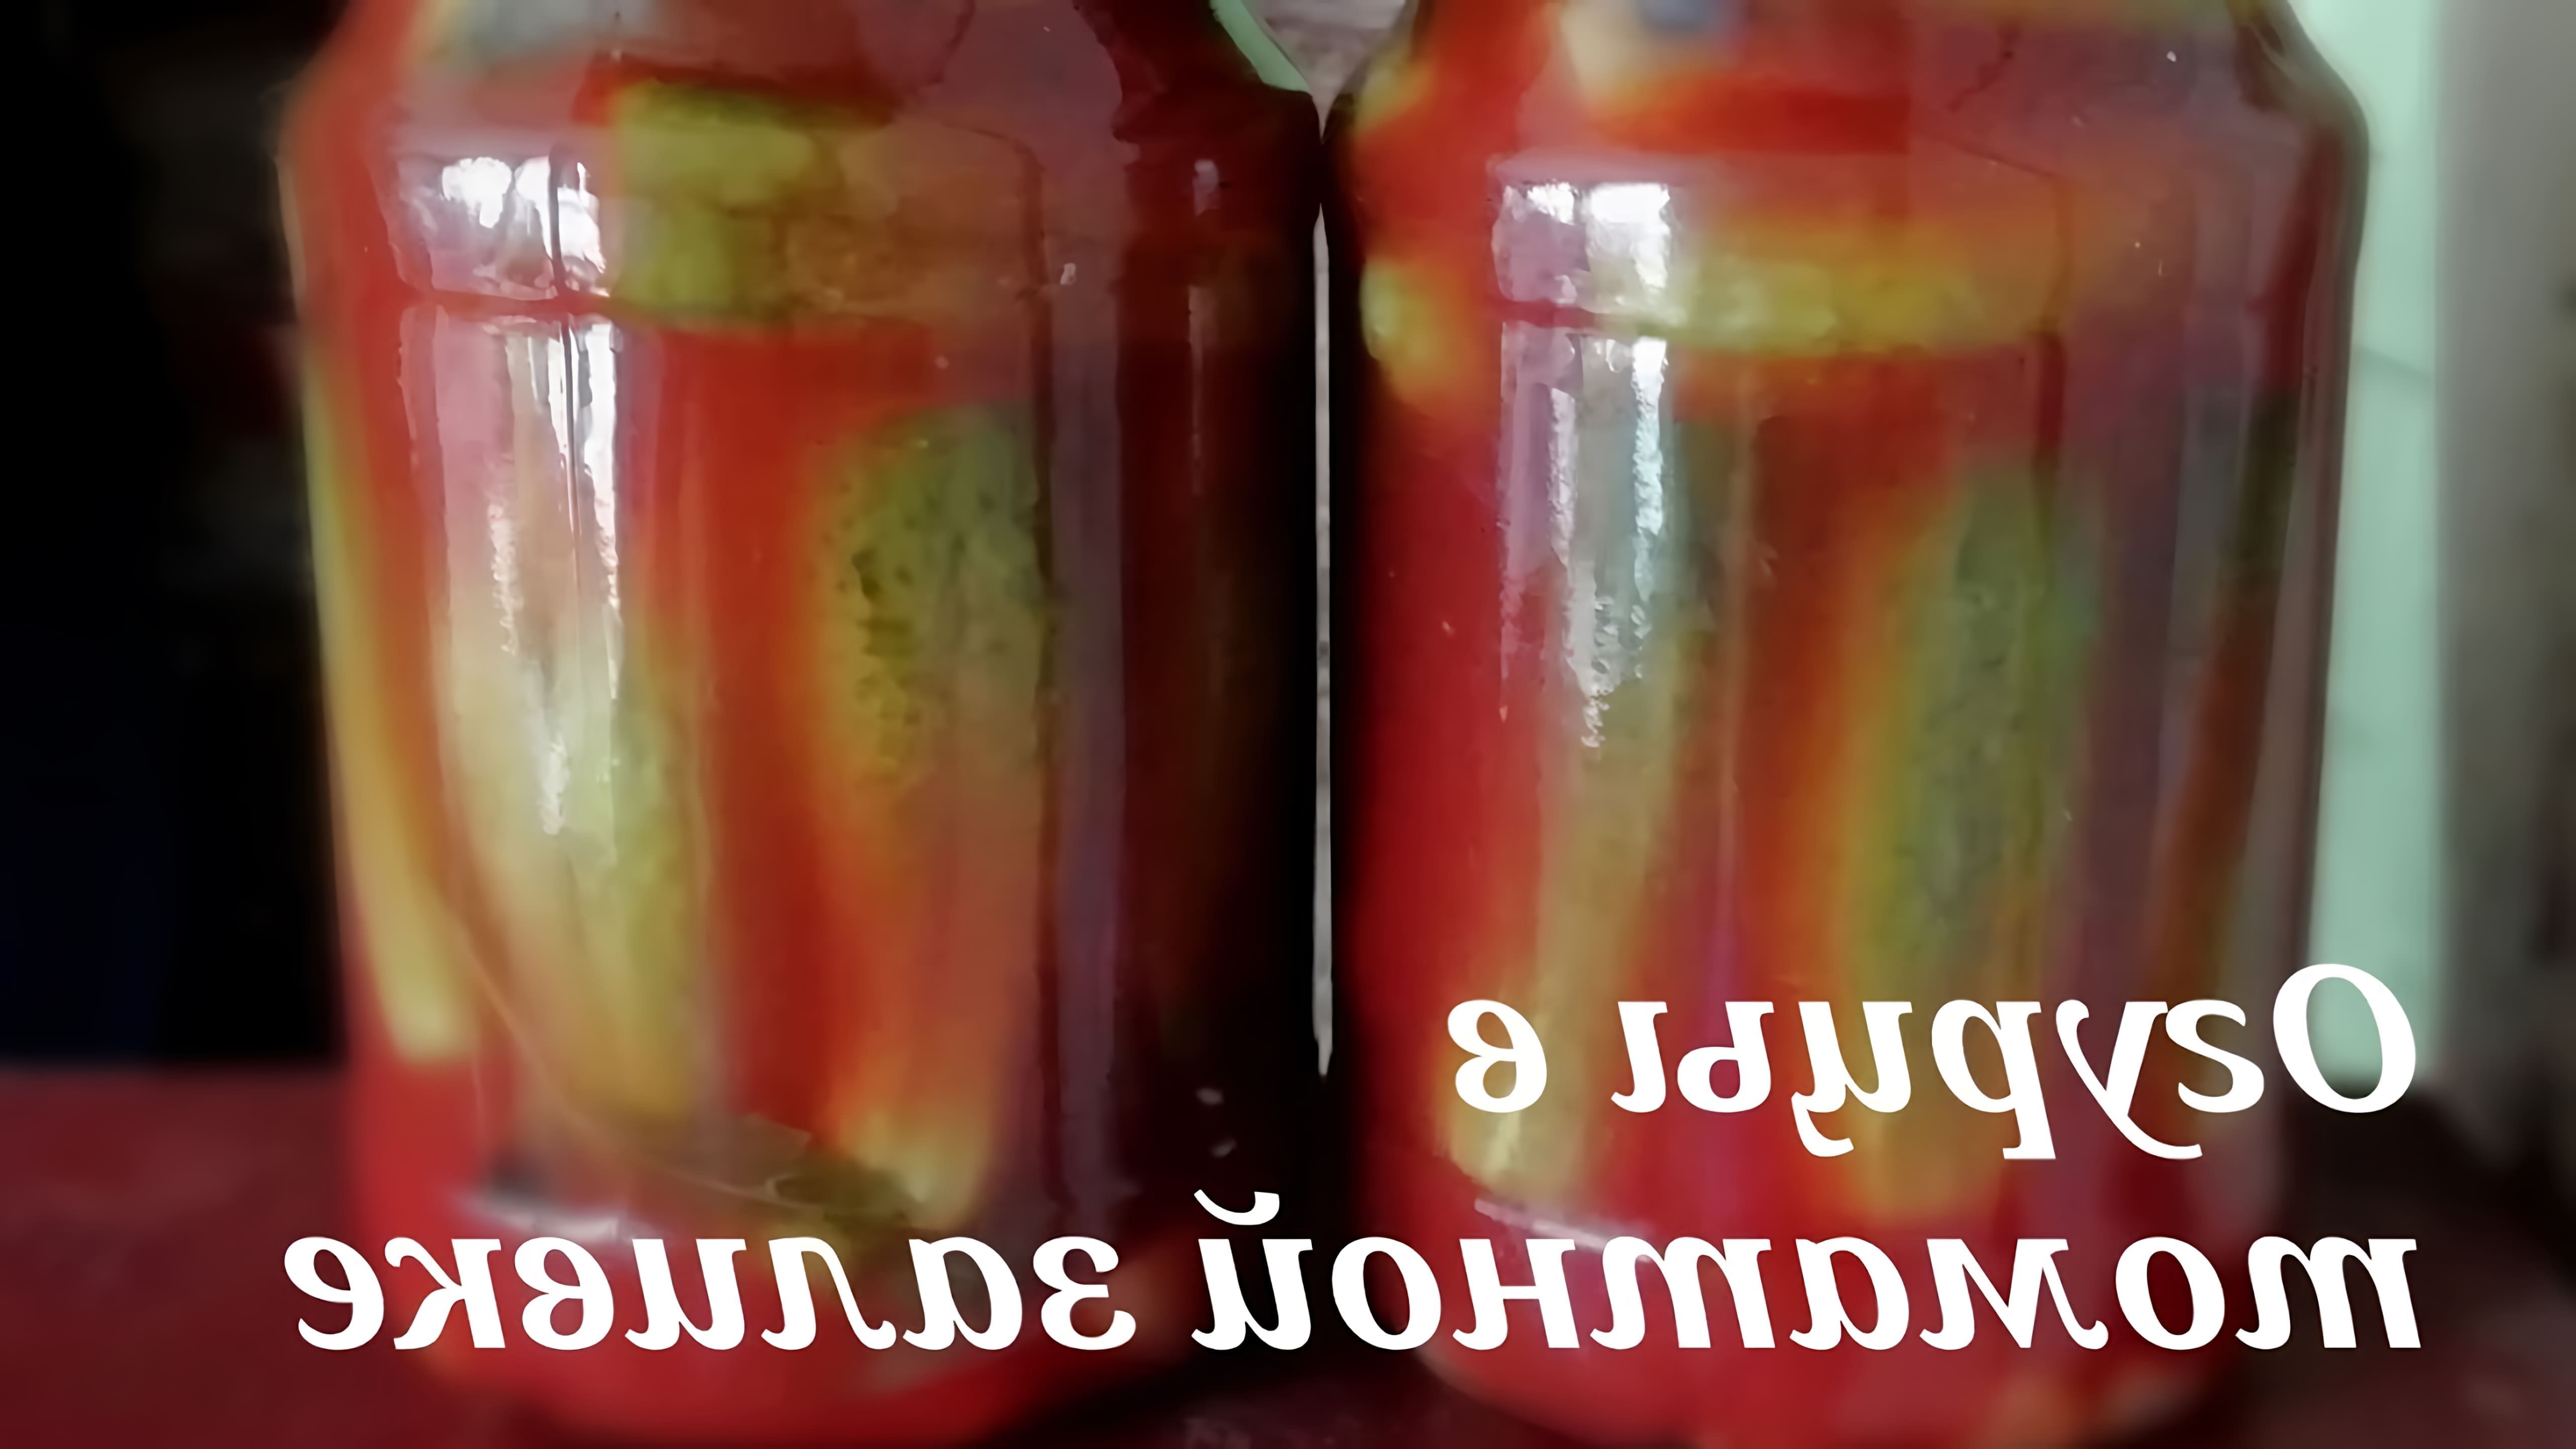 В этом видео демонстрируется процесс приготовления маринованных огурцов в томатной заливке